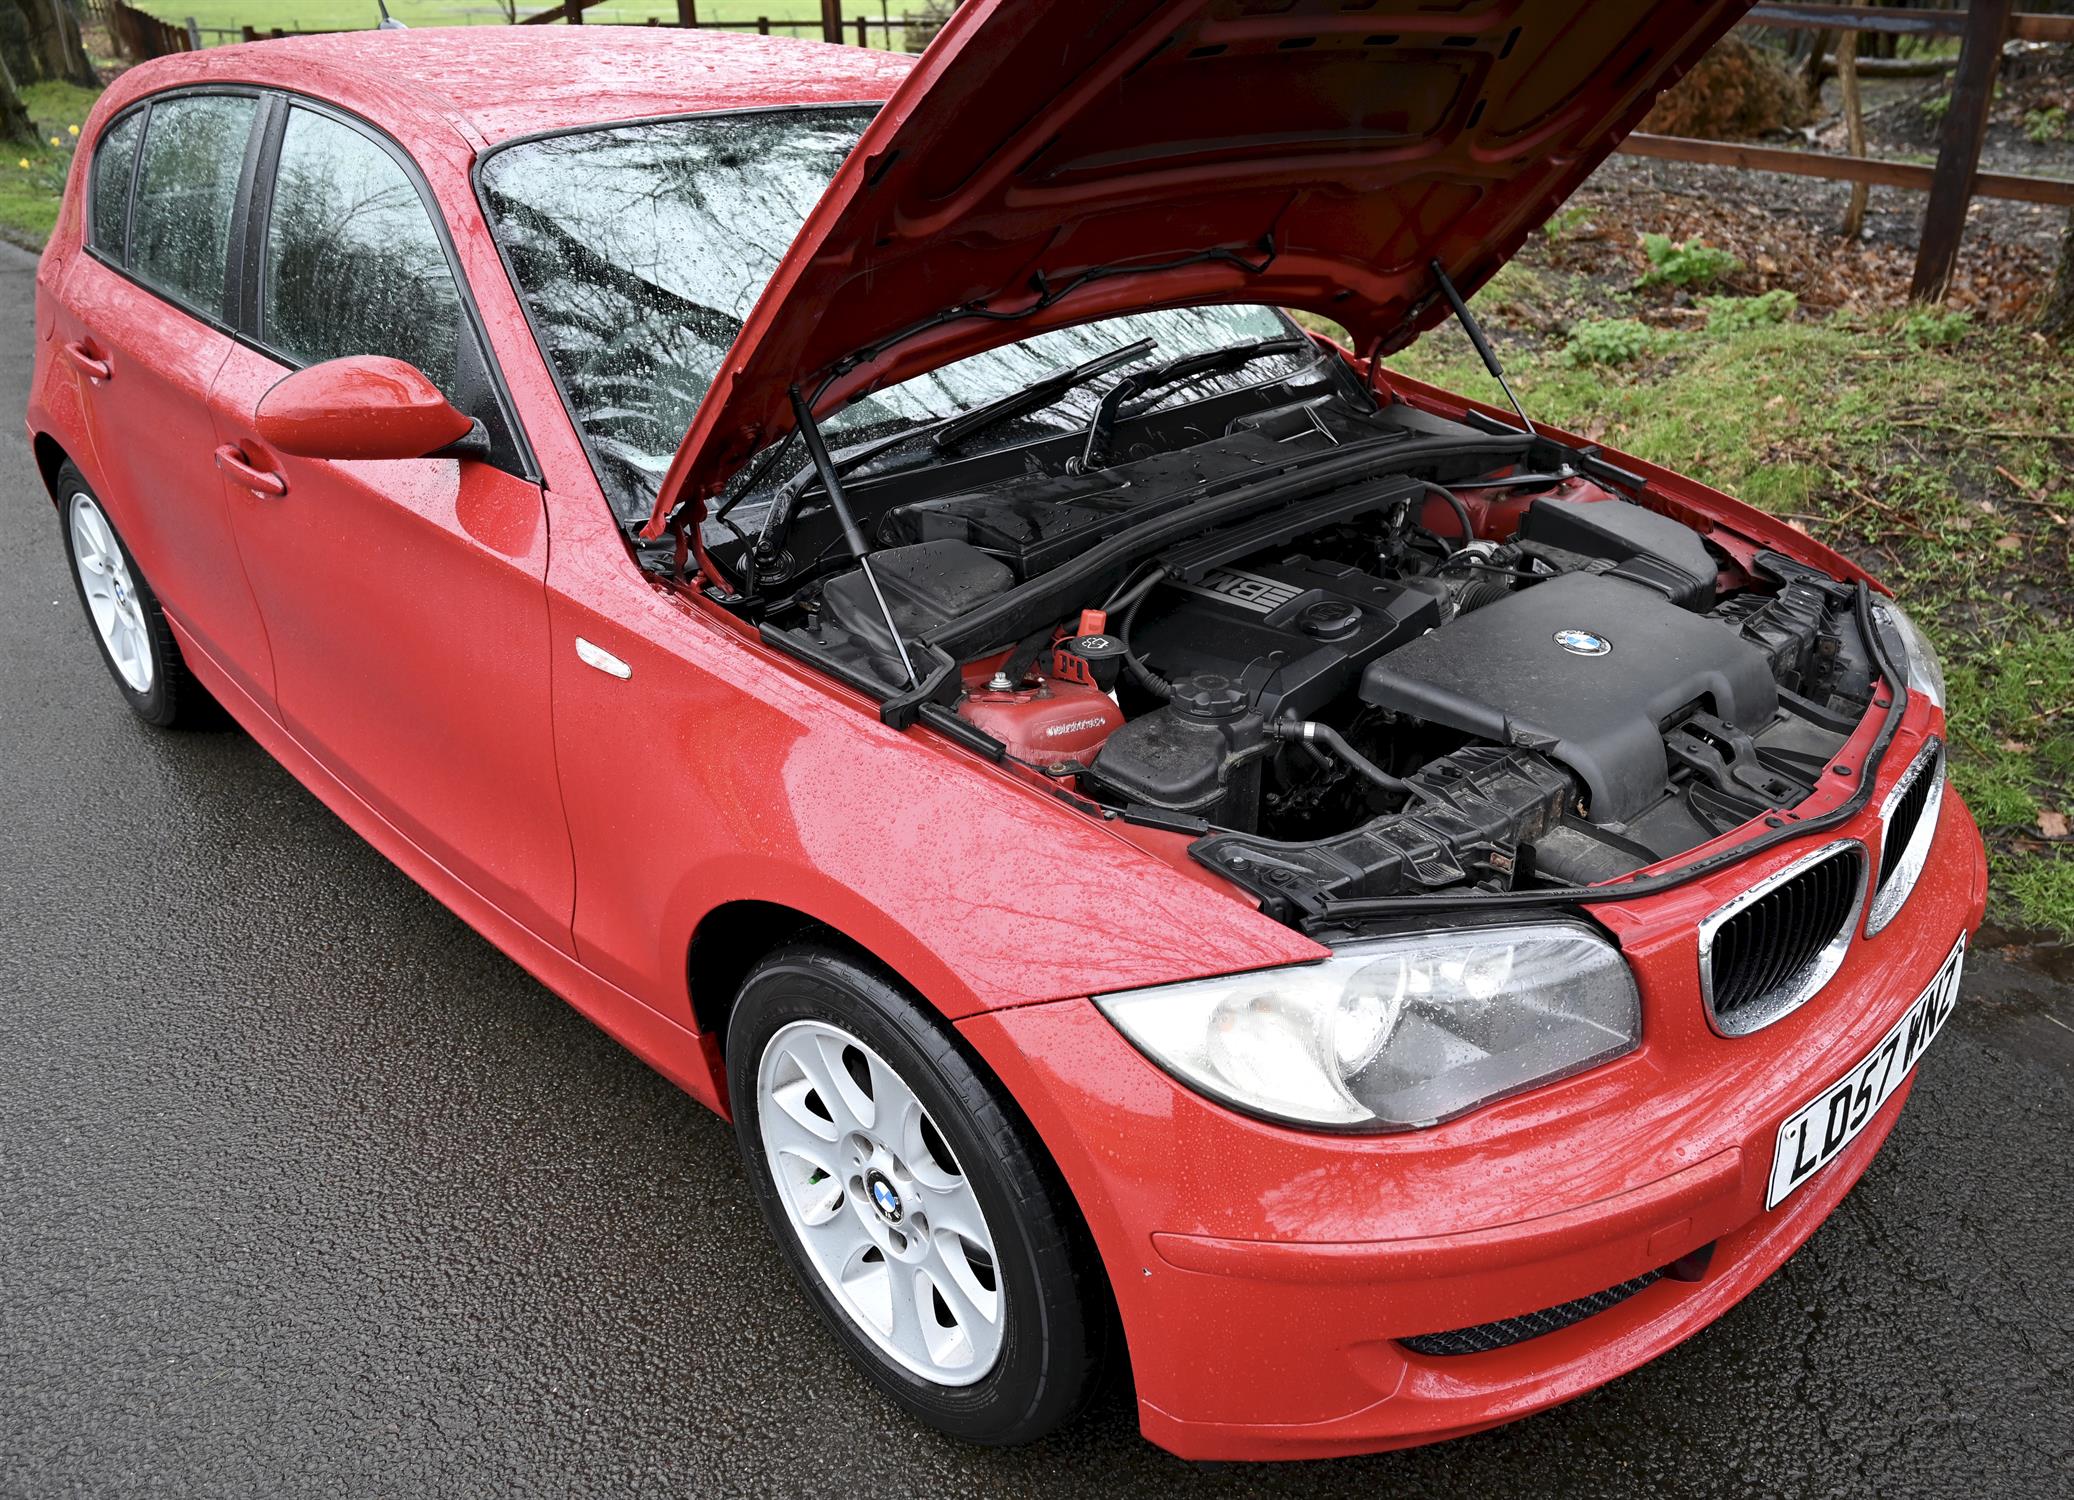 2007 BMW 116i 1597cc Petrol 5 Door Hatchback. Registration number: LD57 WNZ. Mileage: 142,600. - Image 3 of 12